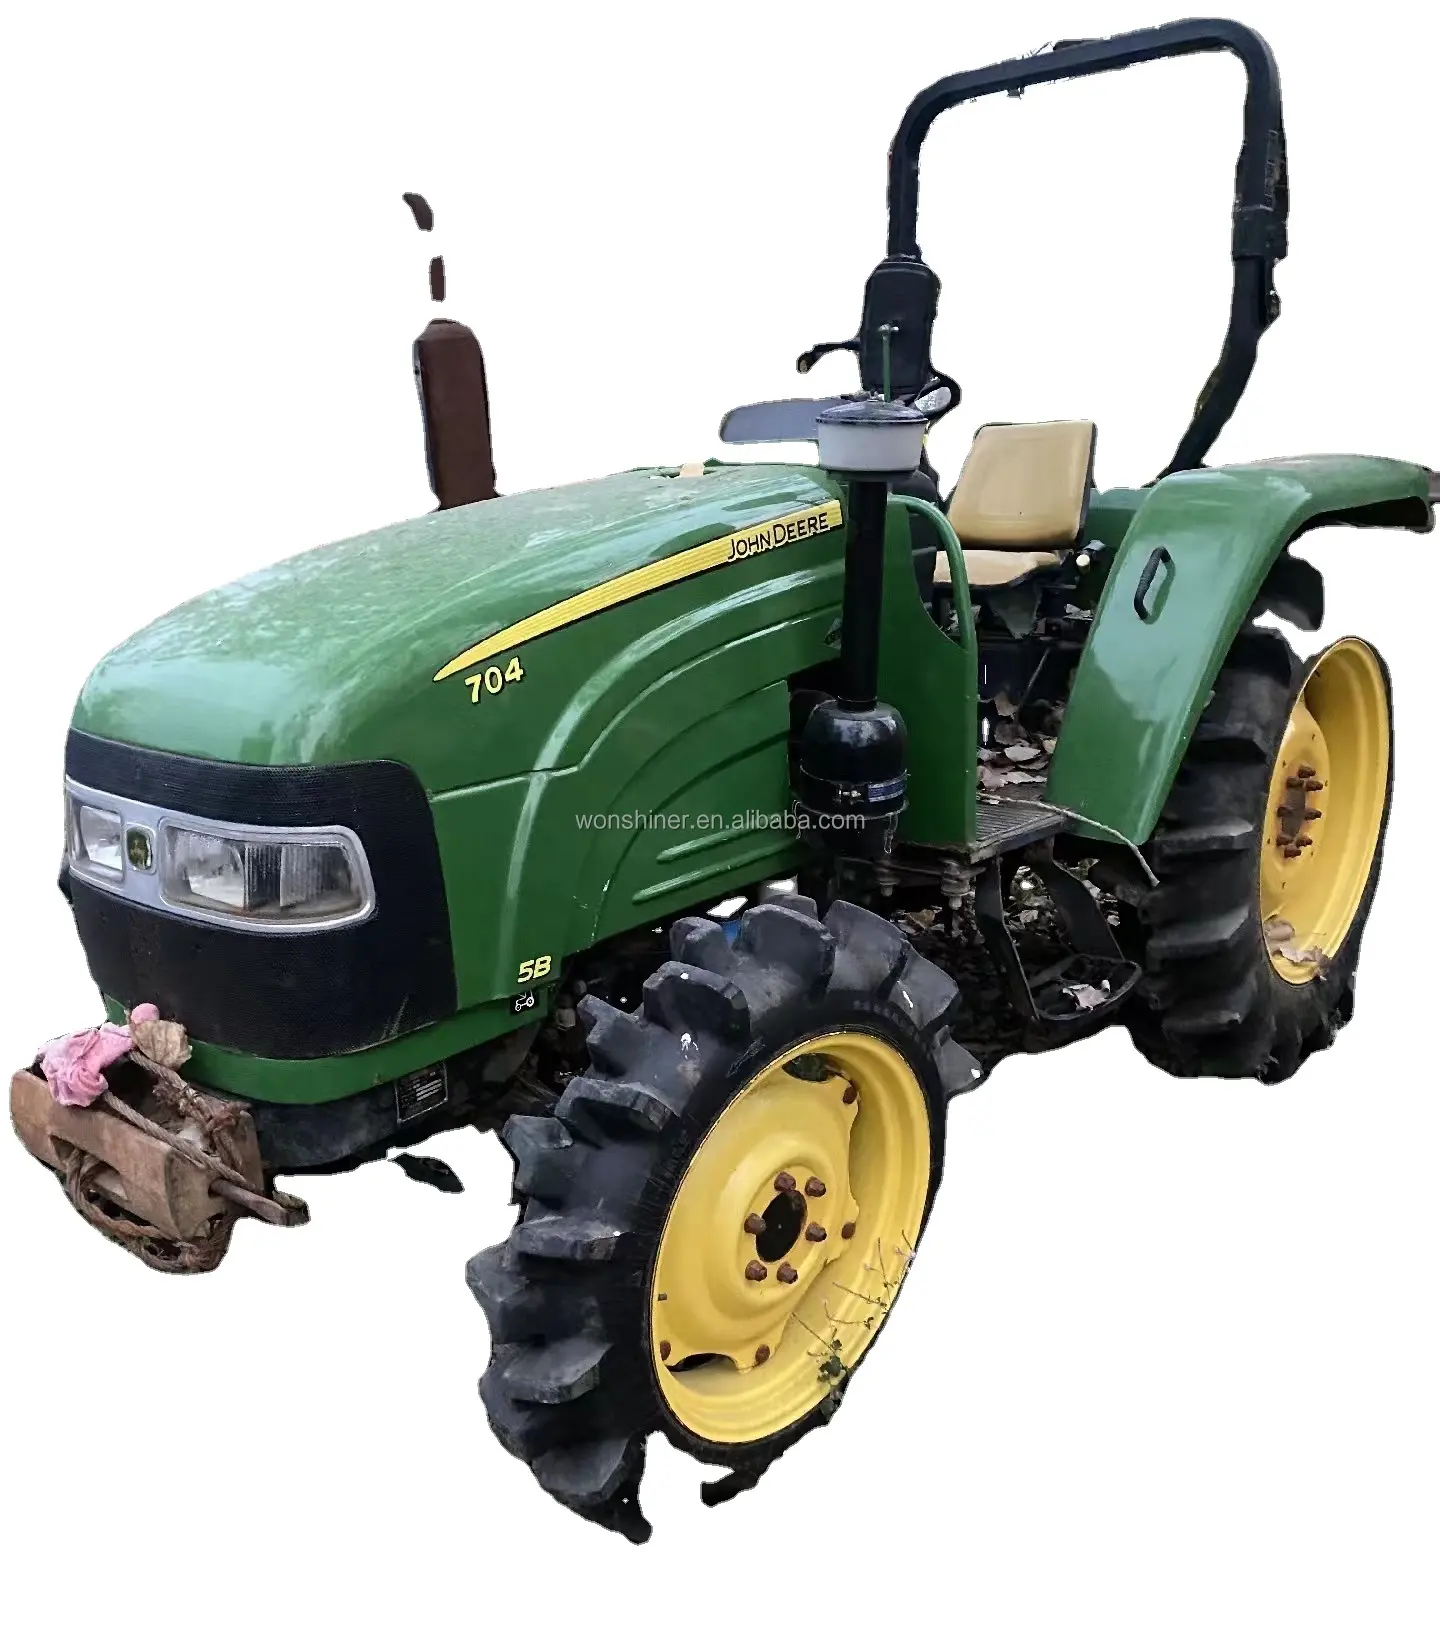 Tracteurs agricoles d'occasion J Deere 4X4WD matériel agricole mini tracteur compact tracteur de verger chargeur frontal 1-2 unités